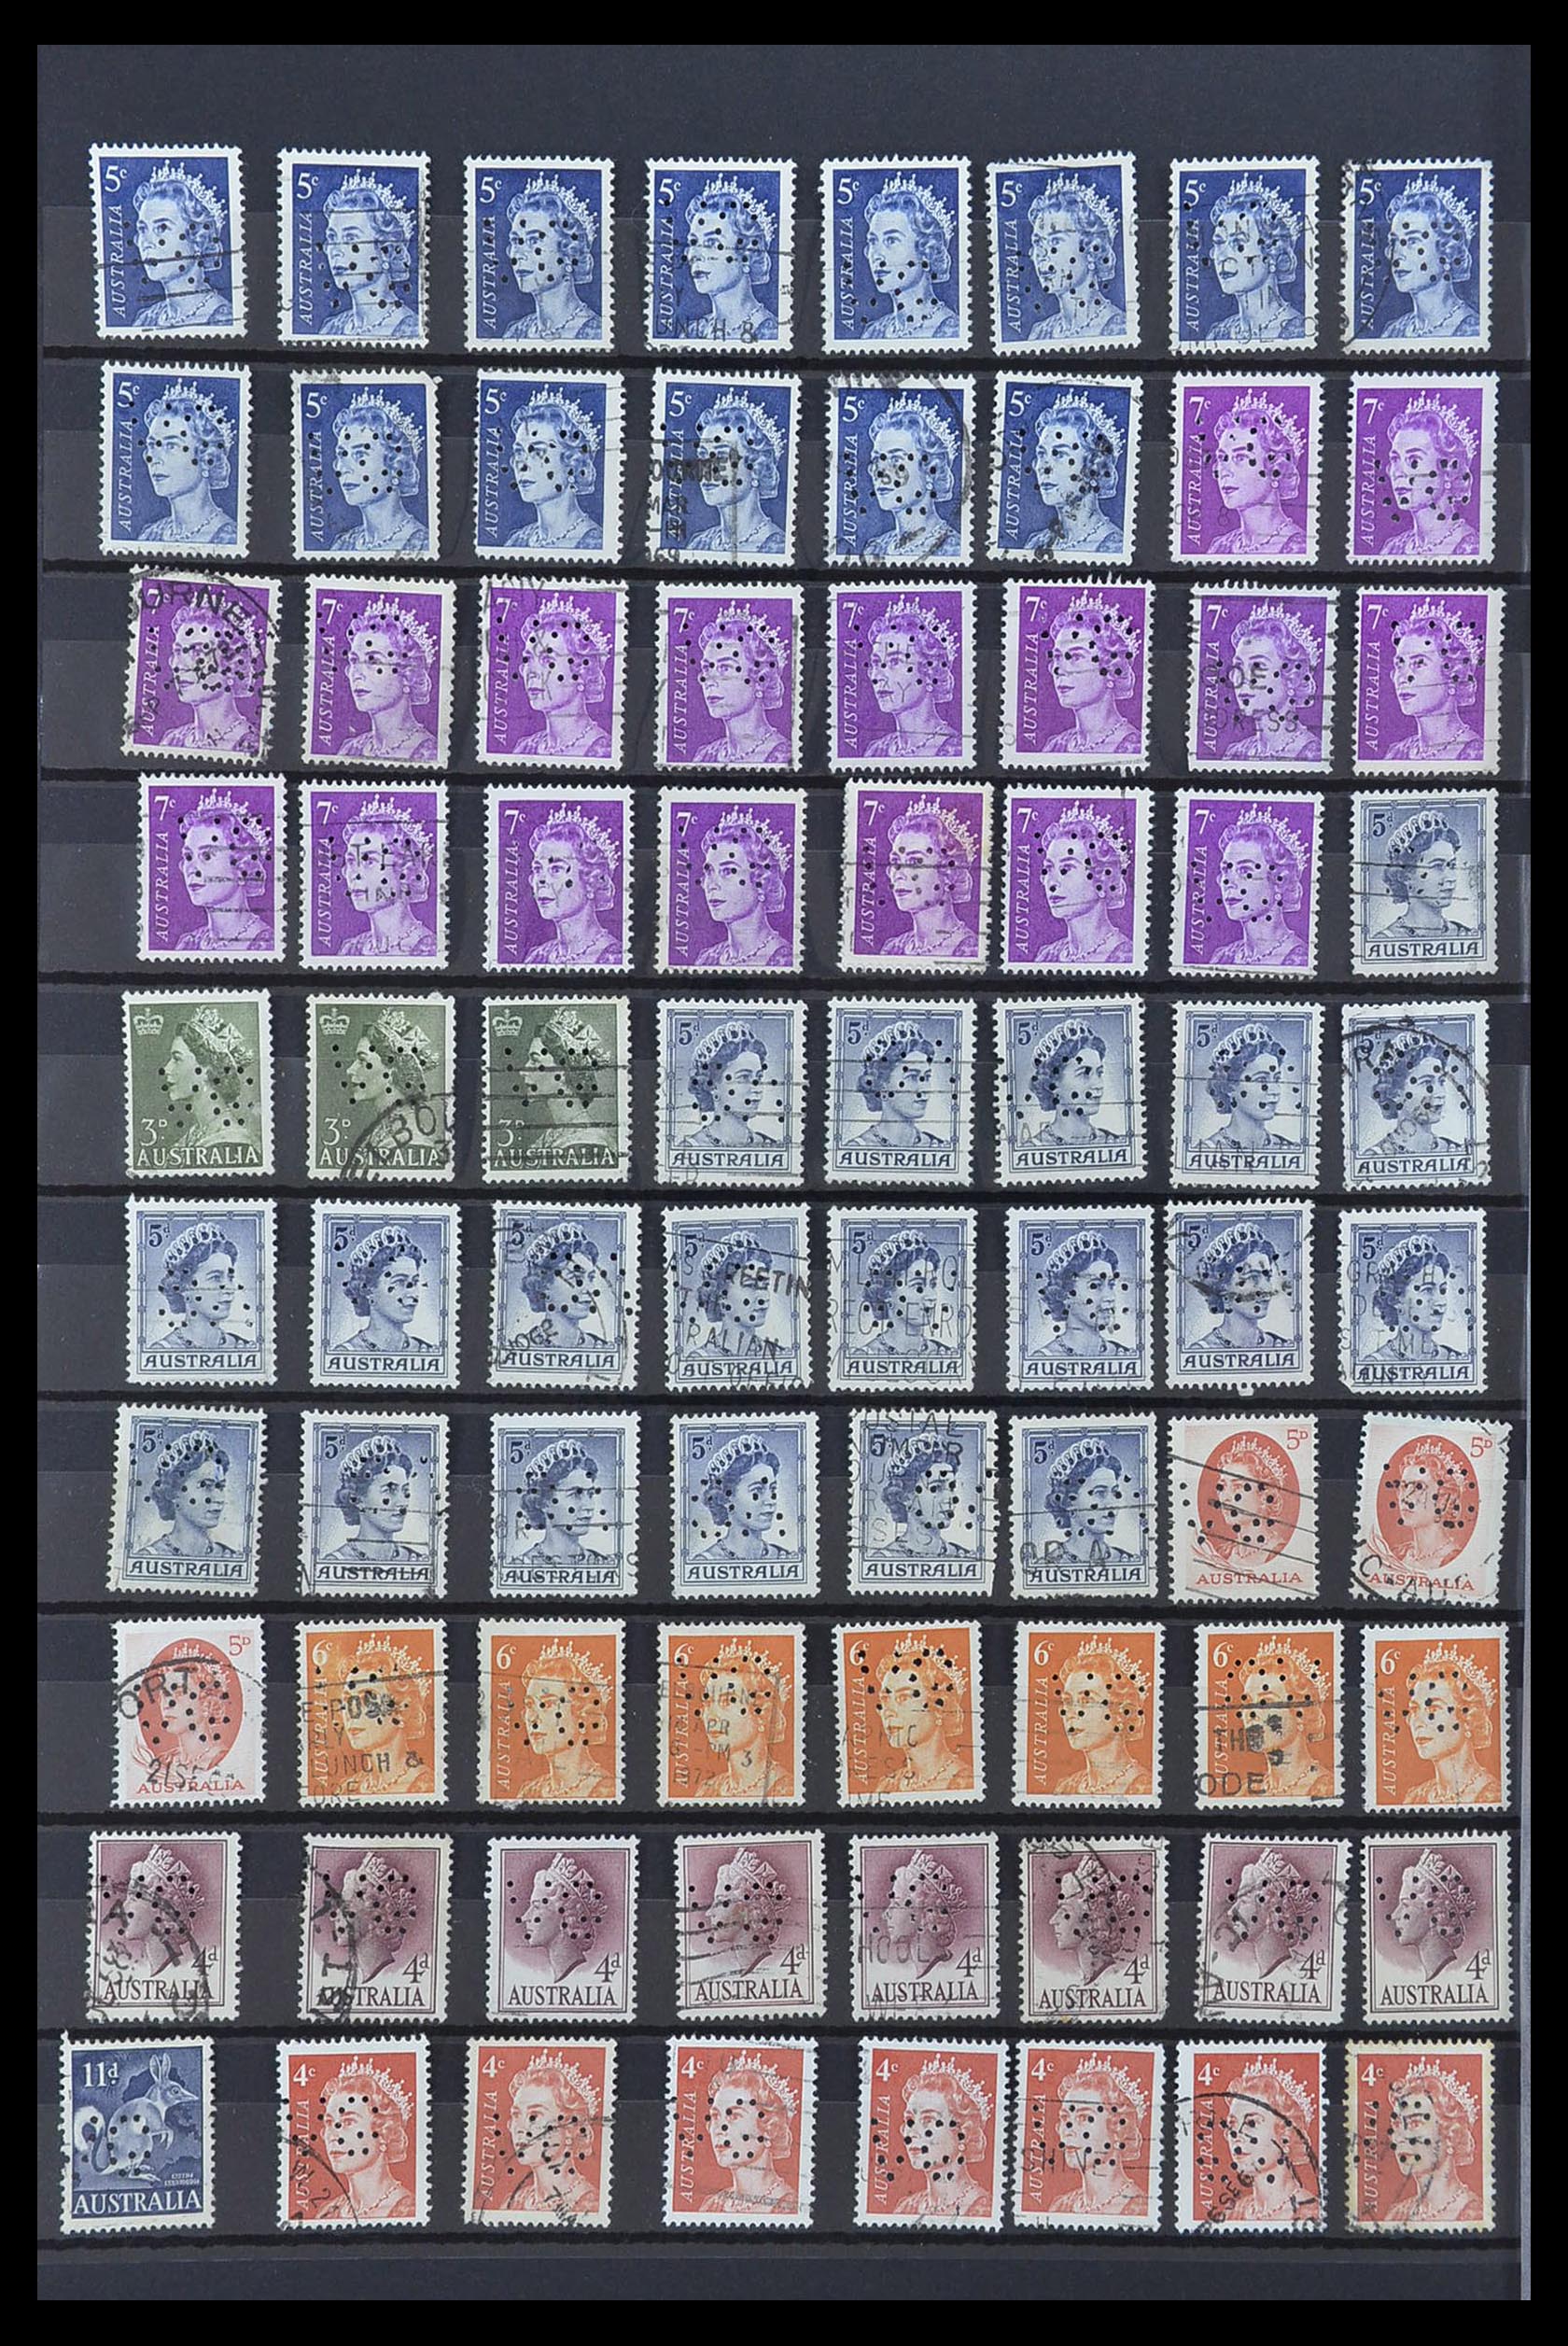 33510 004 - Postzegelverzameling 33510 Australië perfins 1900-1970.